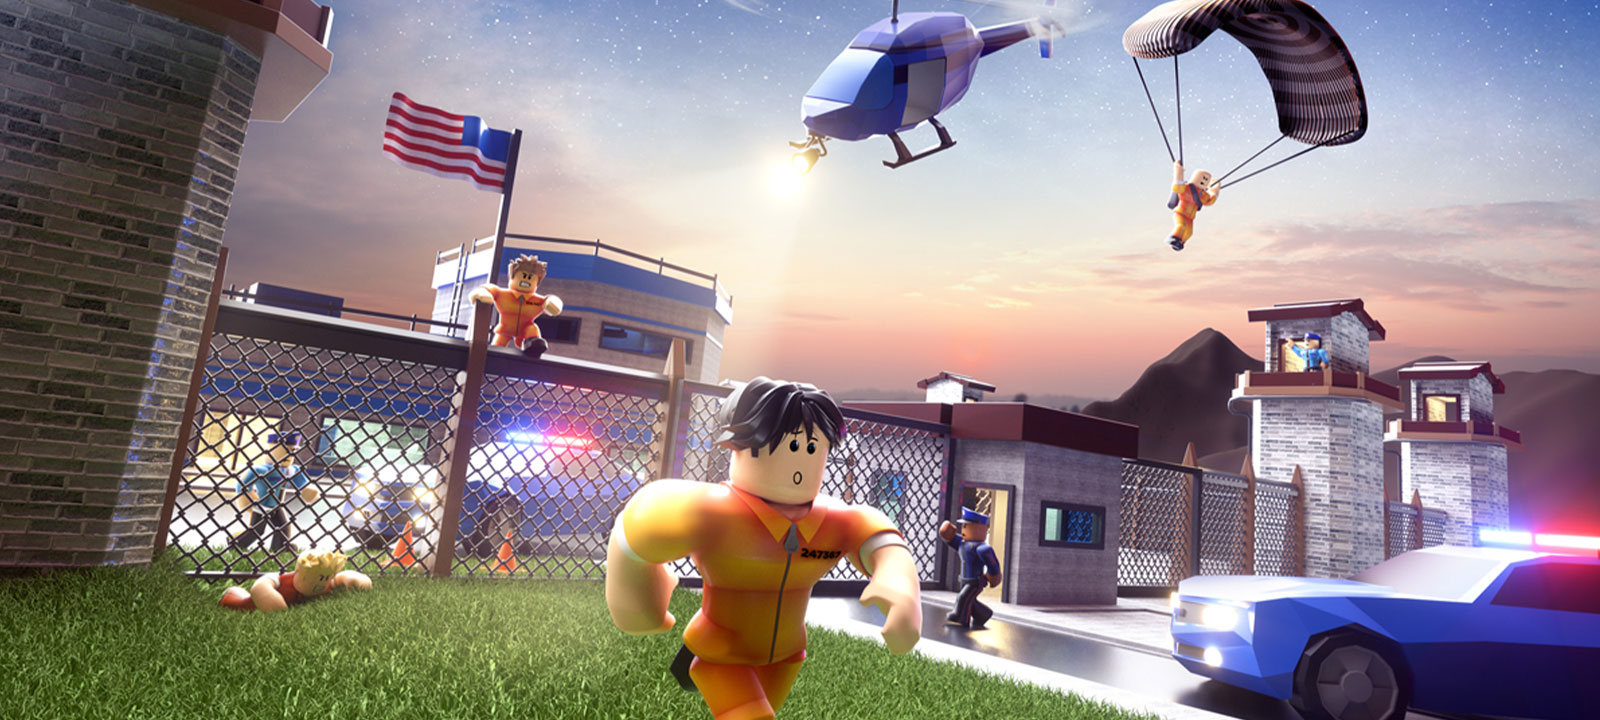 图片展示了一款风格卡通的游戏场景，包含角色逃脱、警察追捕、直升机和警车等元素，背景是夜晚的监狱。